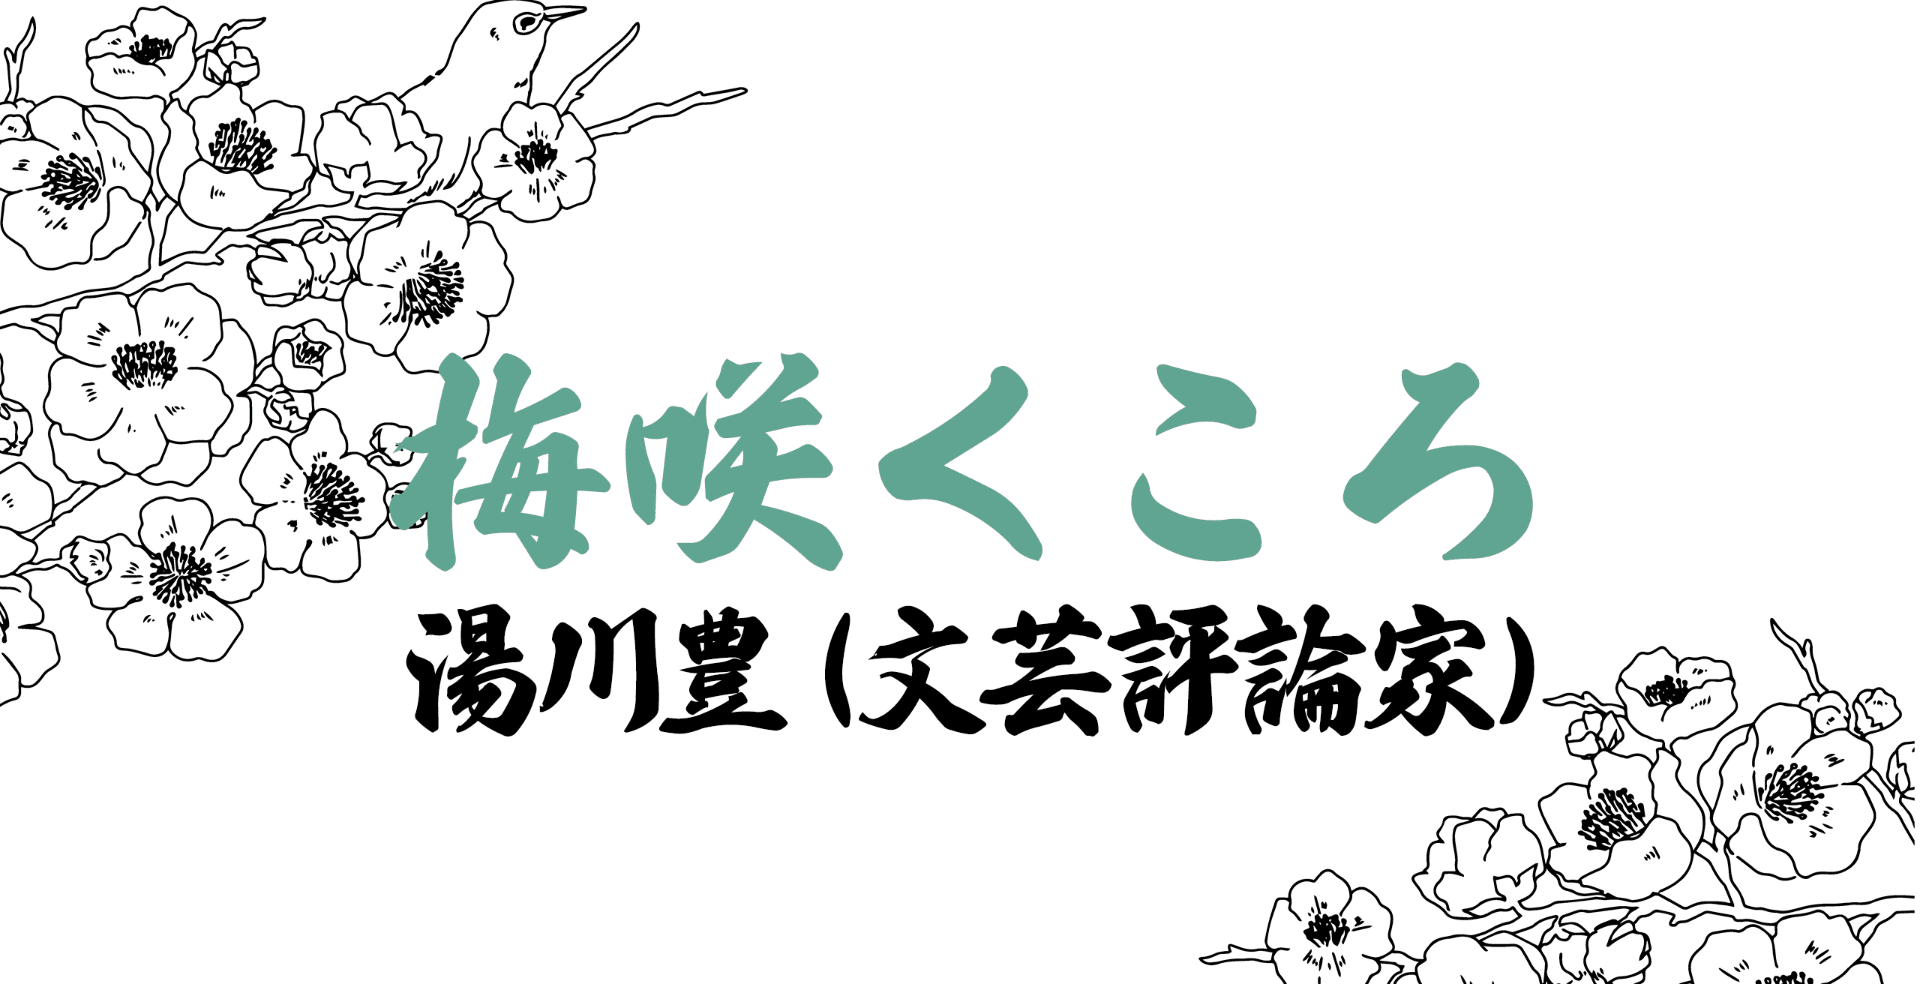 超特価】 藤沢周平のすべて 文藝春秋 broadcastrf.com